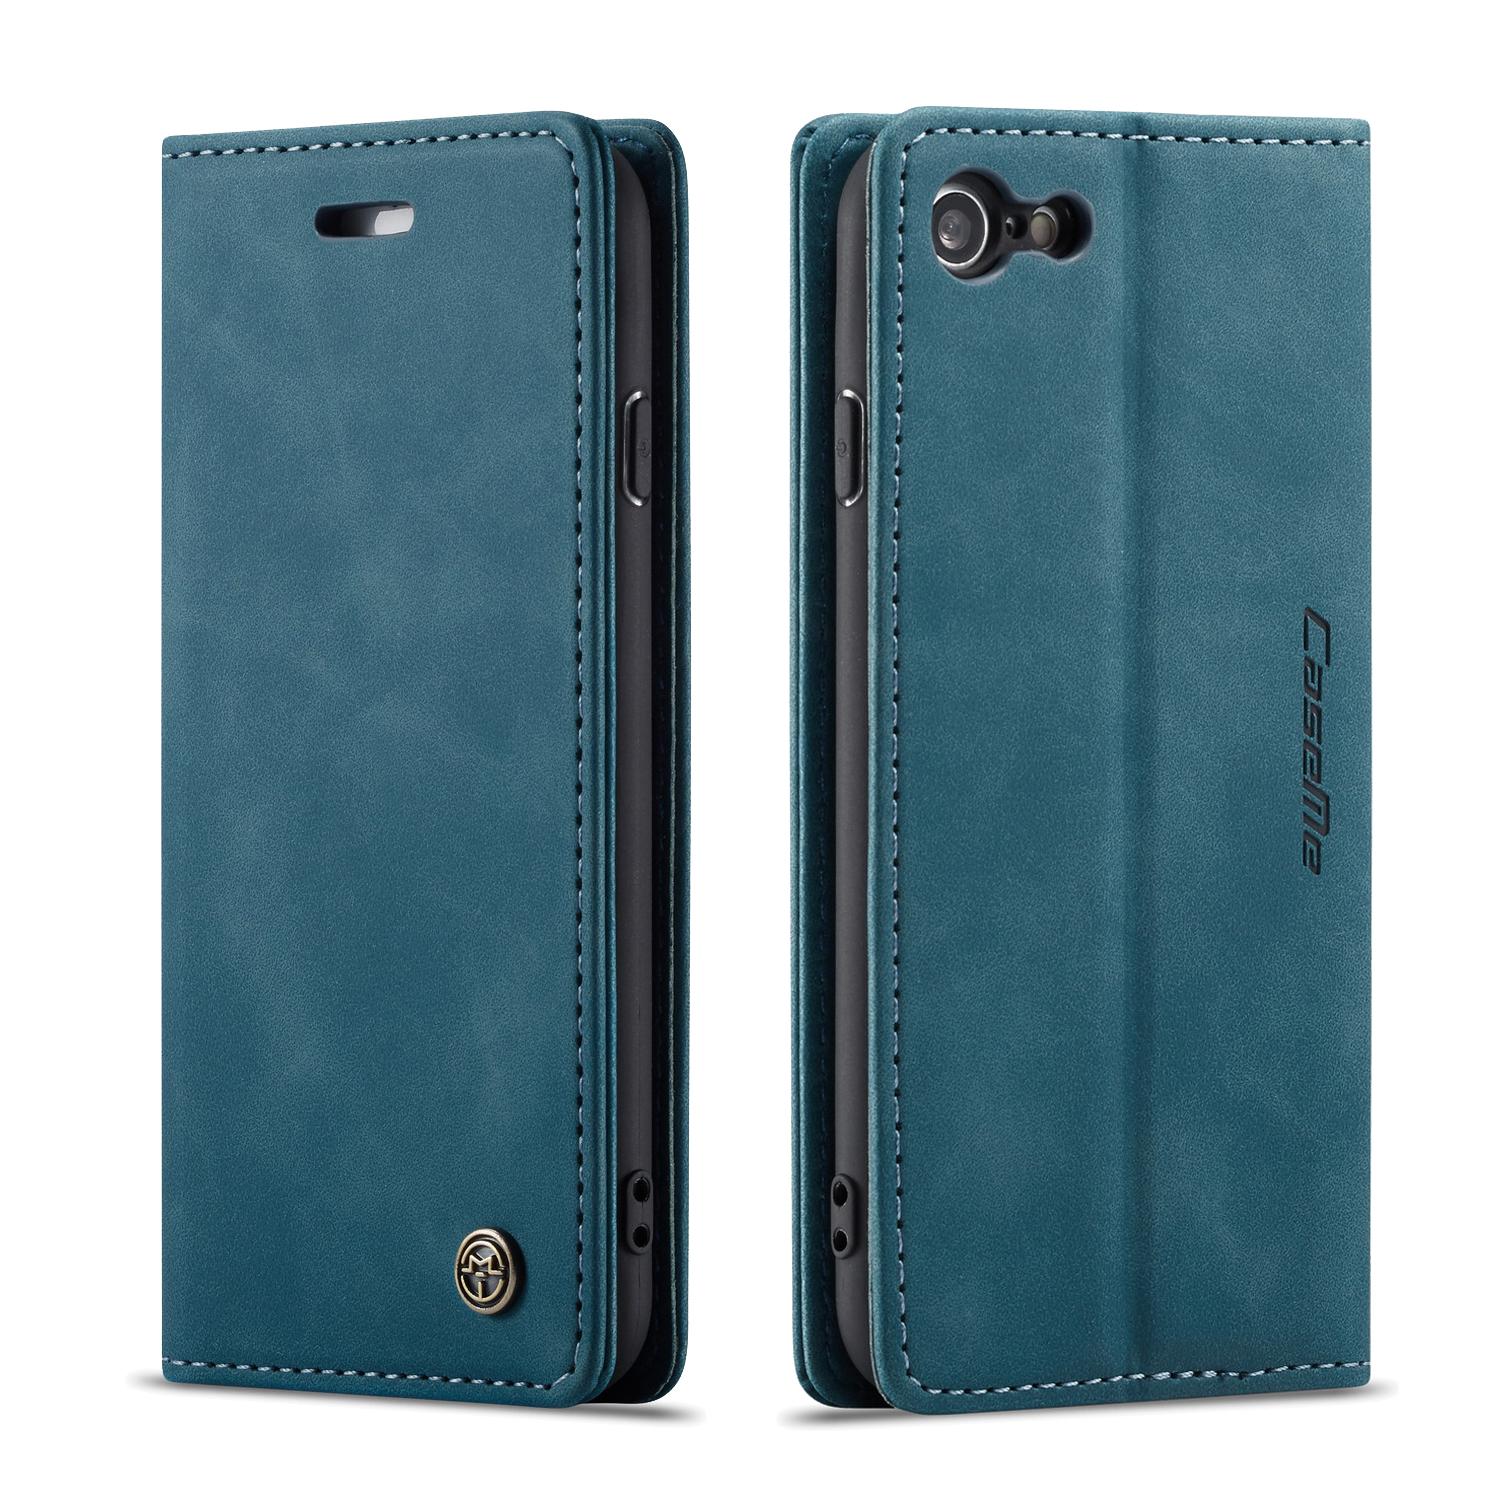 Slim Portemonnaie-Hülle iPhone 7 blau